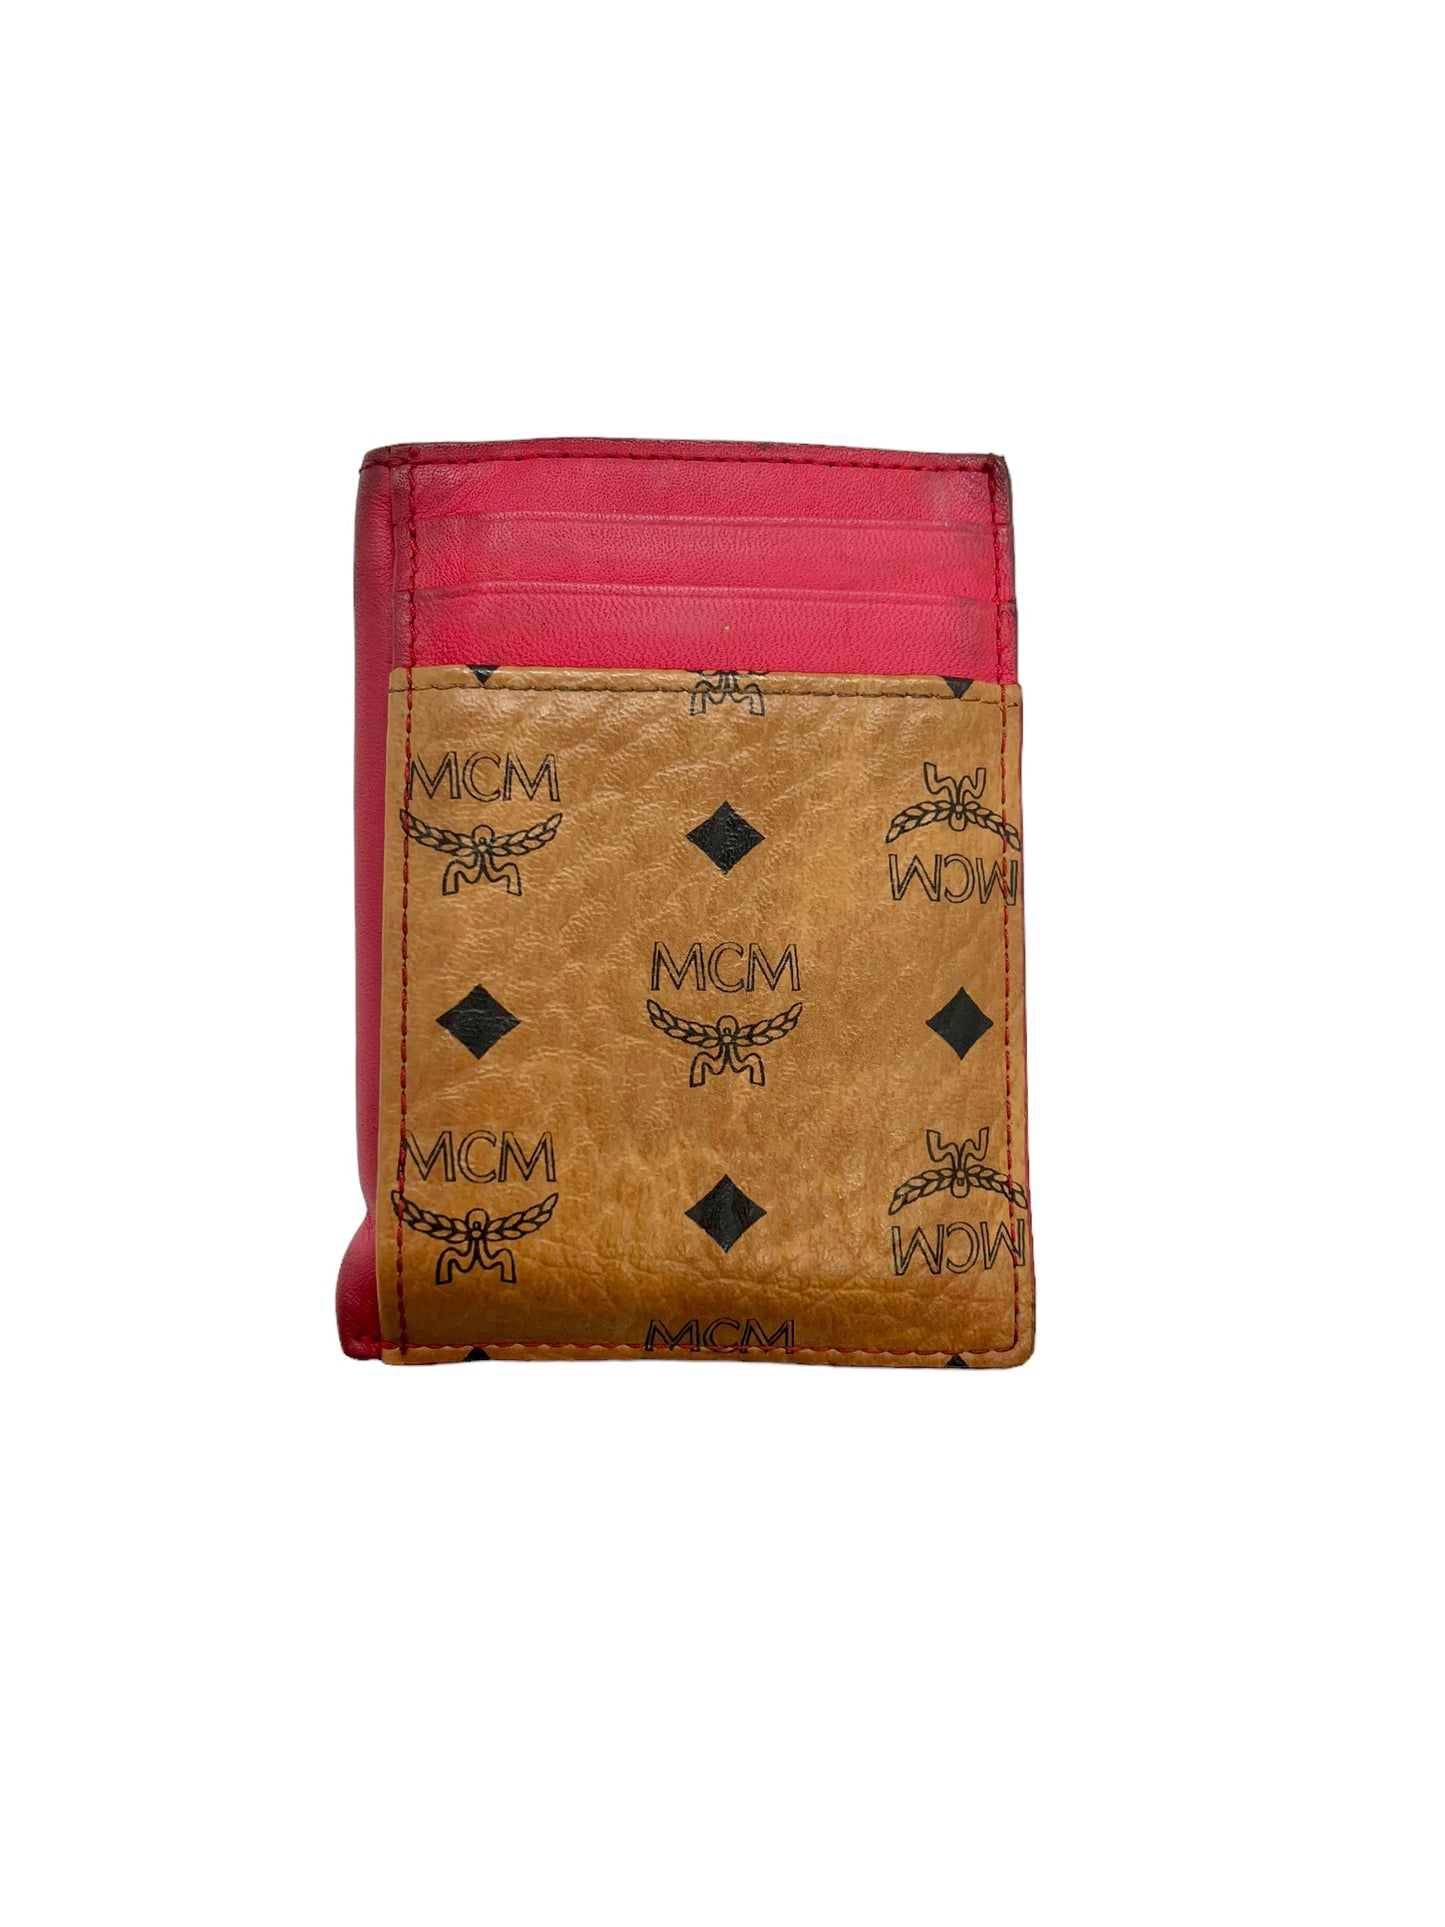 MCM Tan & Red Visetos Heritage Card Holder